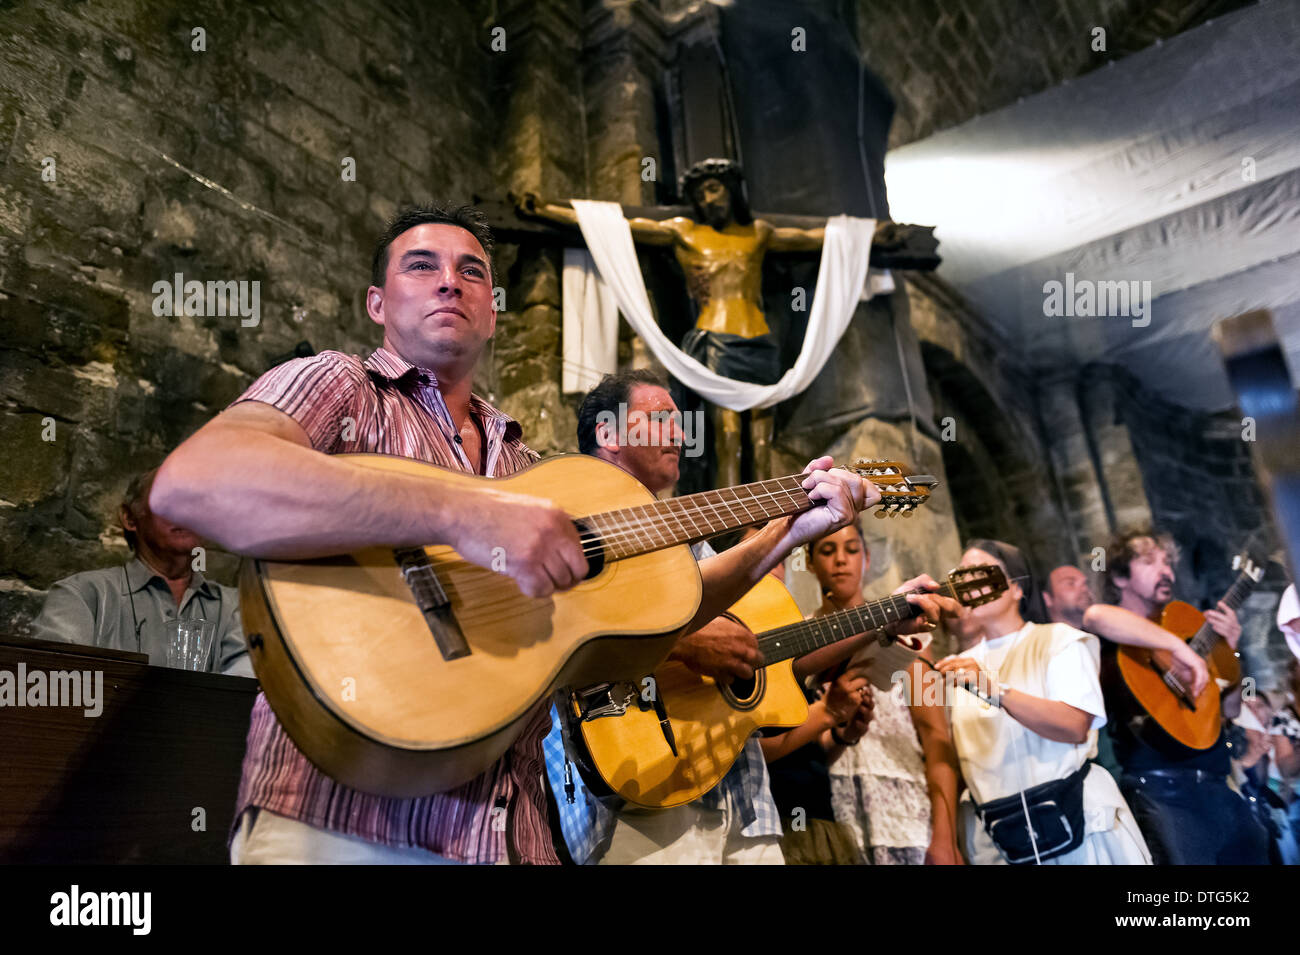 Europe, France, Bouche-du-Rhône, 13, Saintes-Maries-de-la-Mer, pèlerinage des gitans, gitans jouant de la guitare dans une église. Banque D'Images